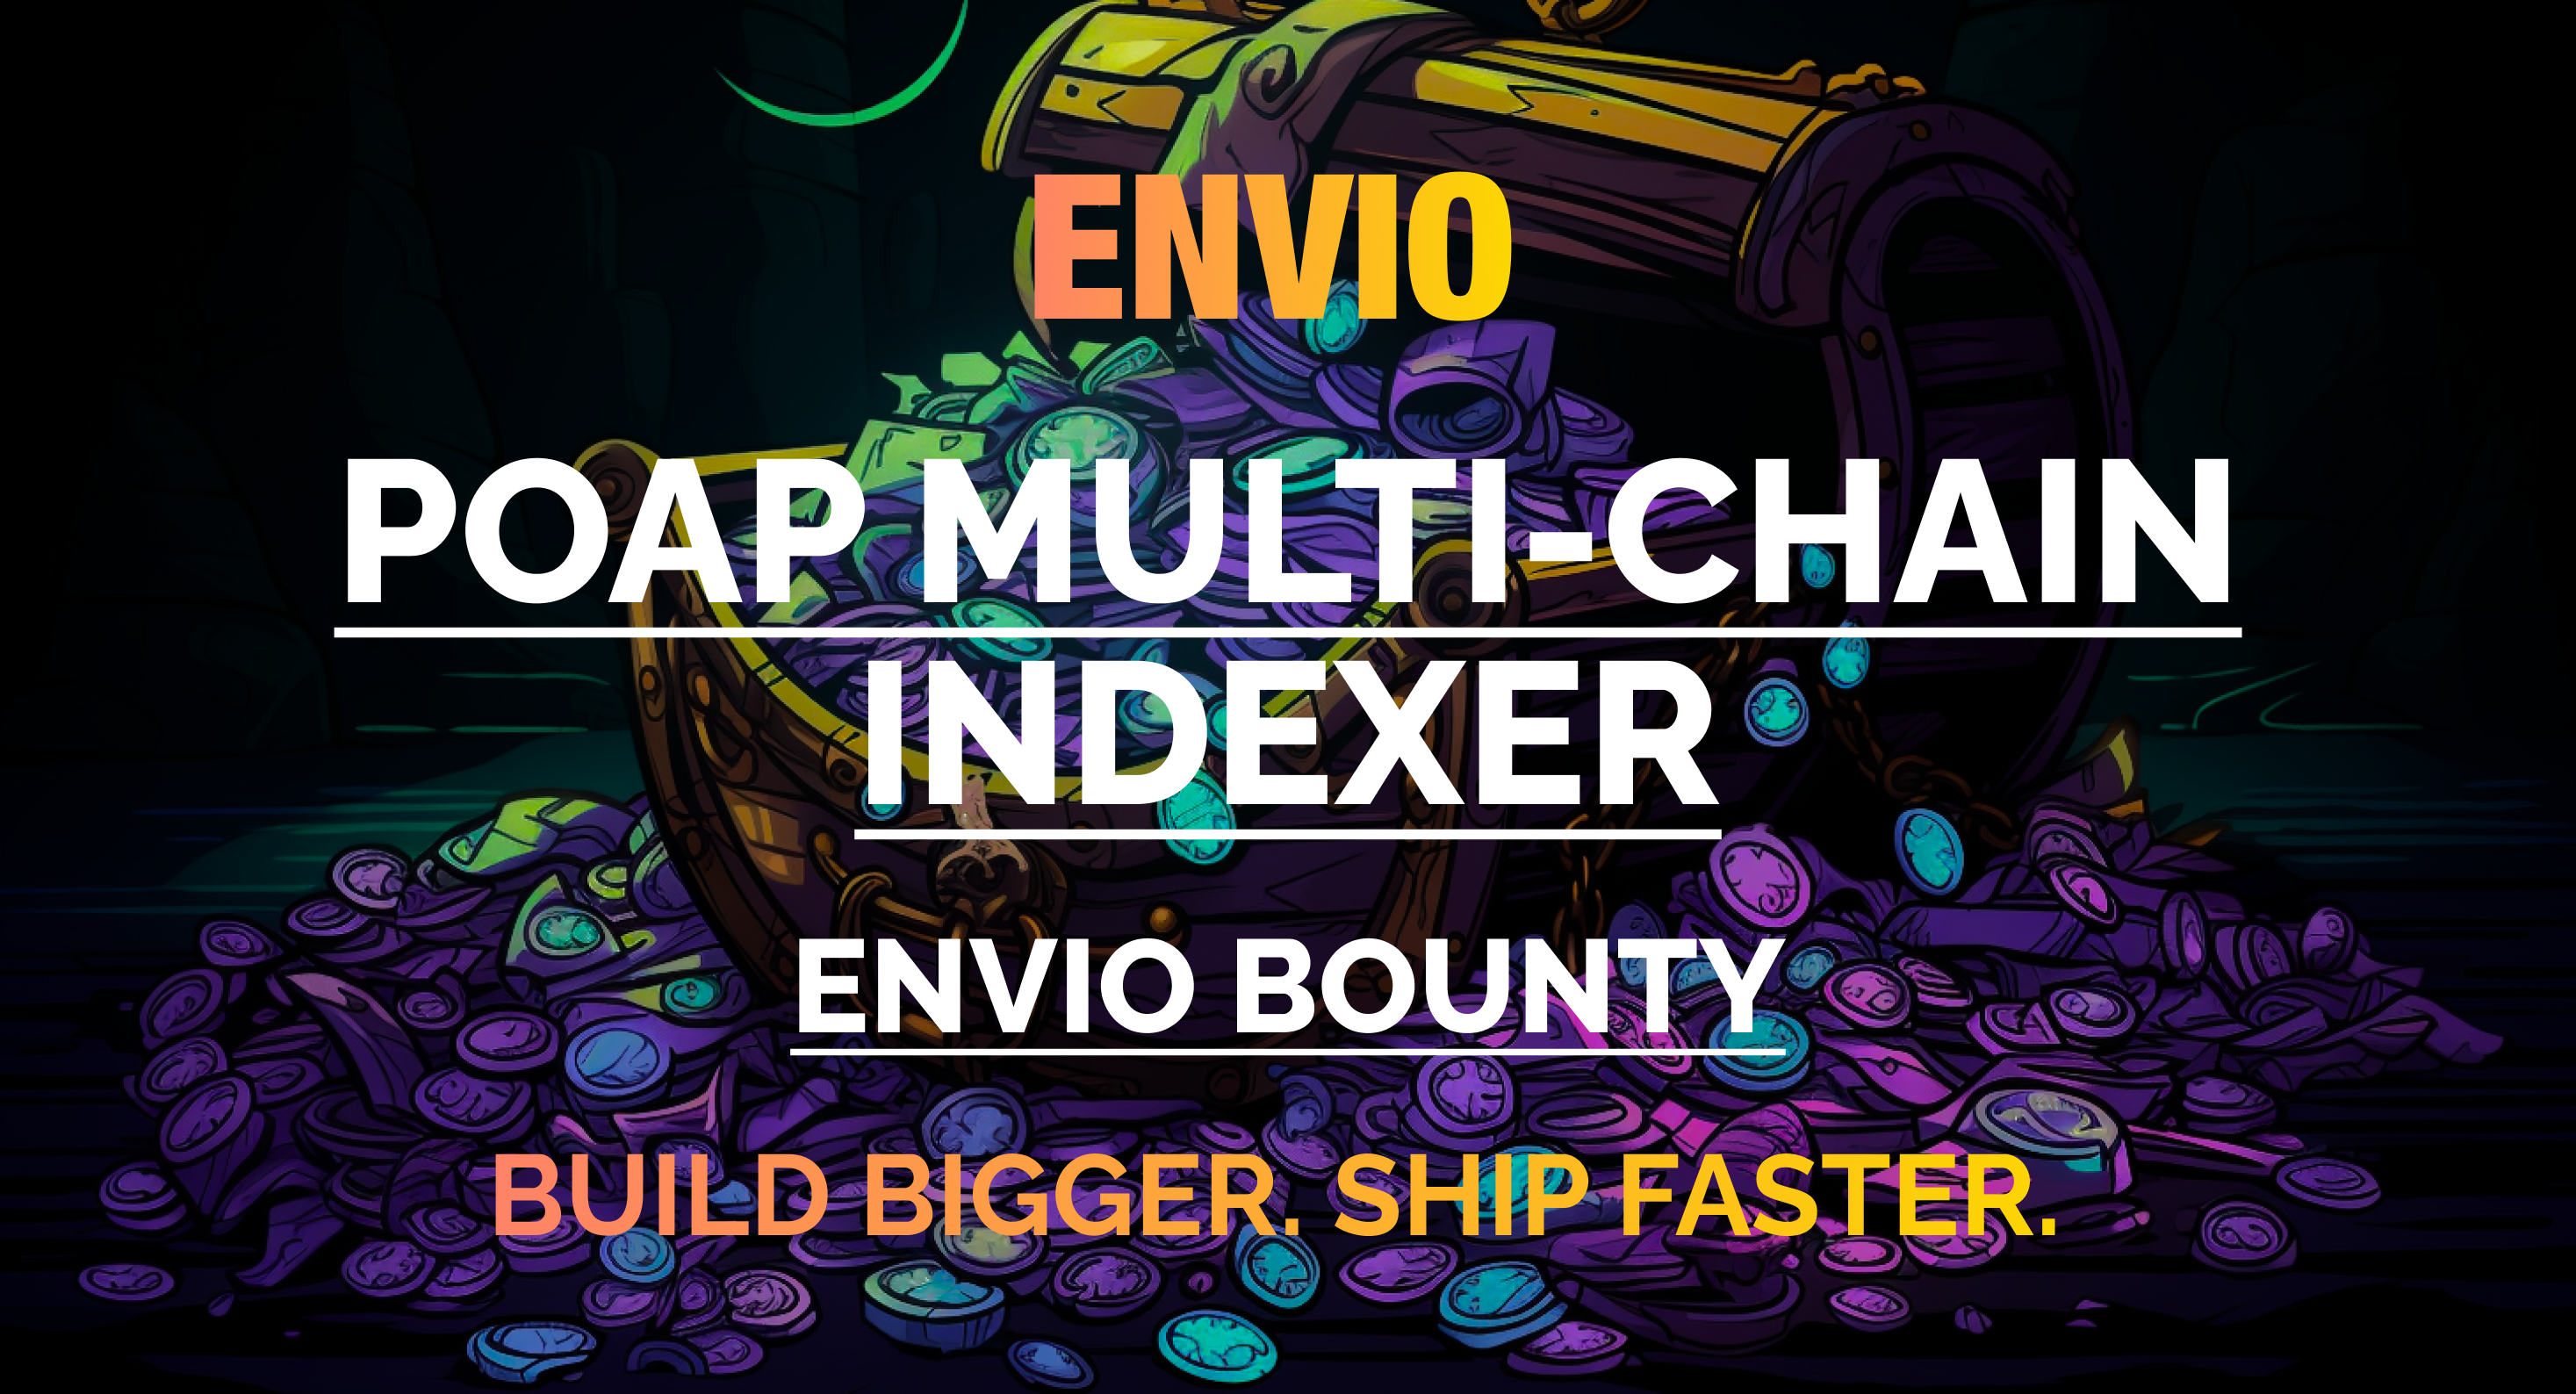 Cover Image for Envio Bounty Graduate: POAP Multi-chain Indexer